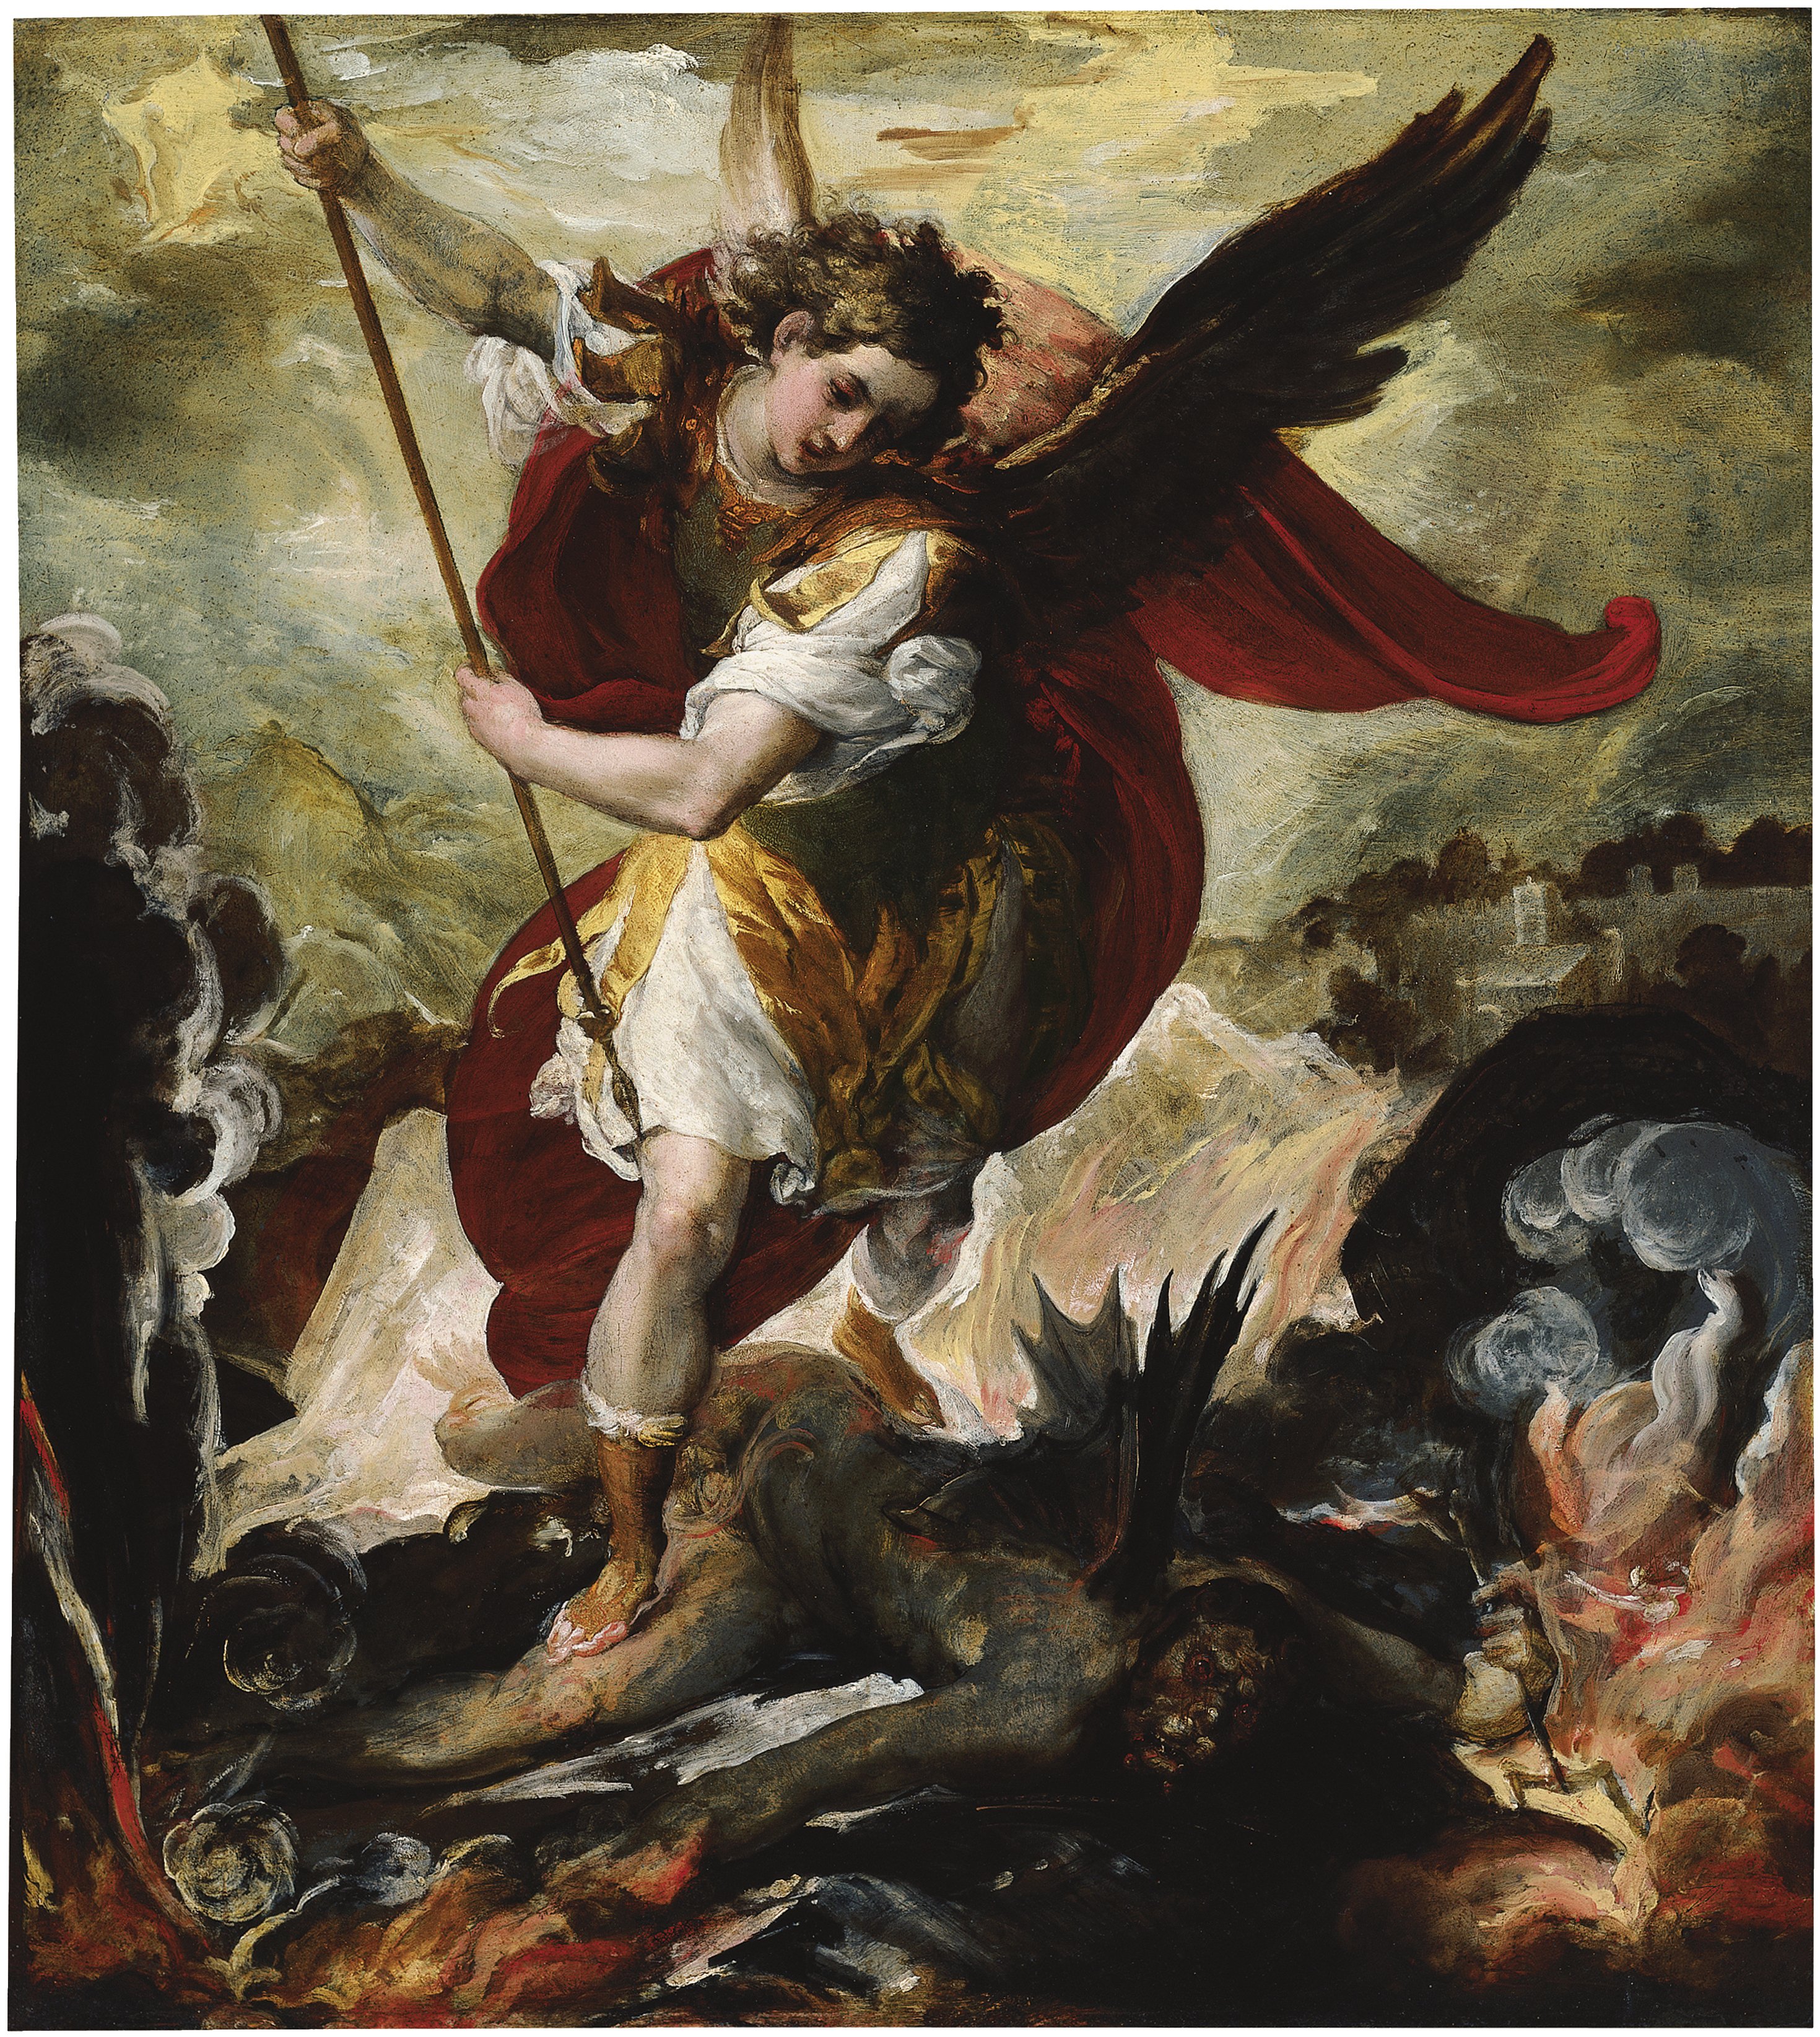 The Archangel Michael overthrowing Lucifer. San Miguel arcángel venciendo a Lucifer, c. 1656